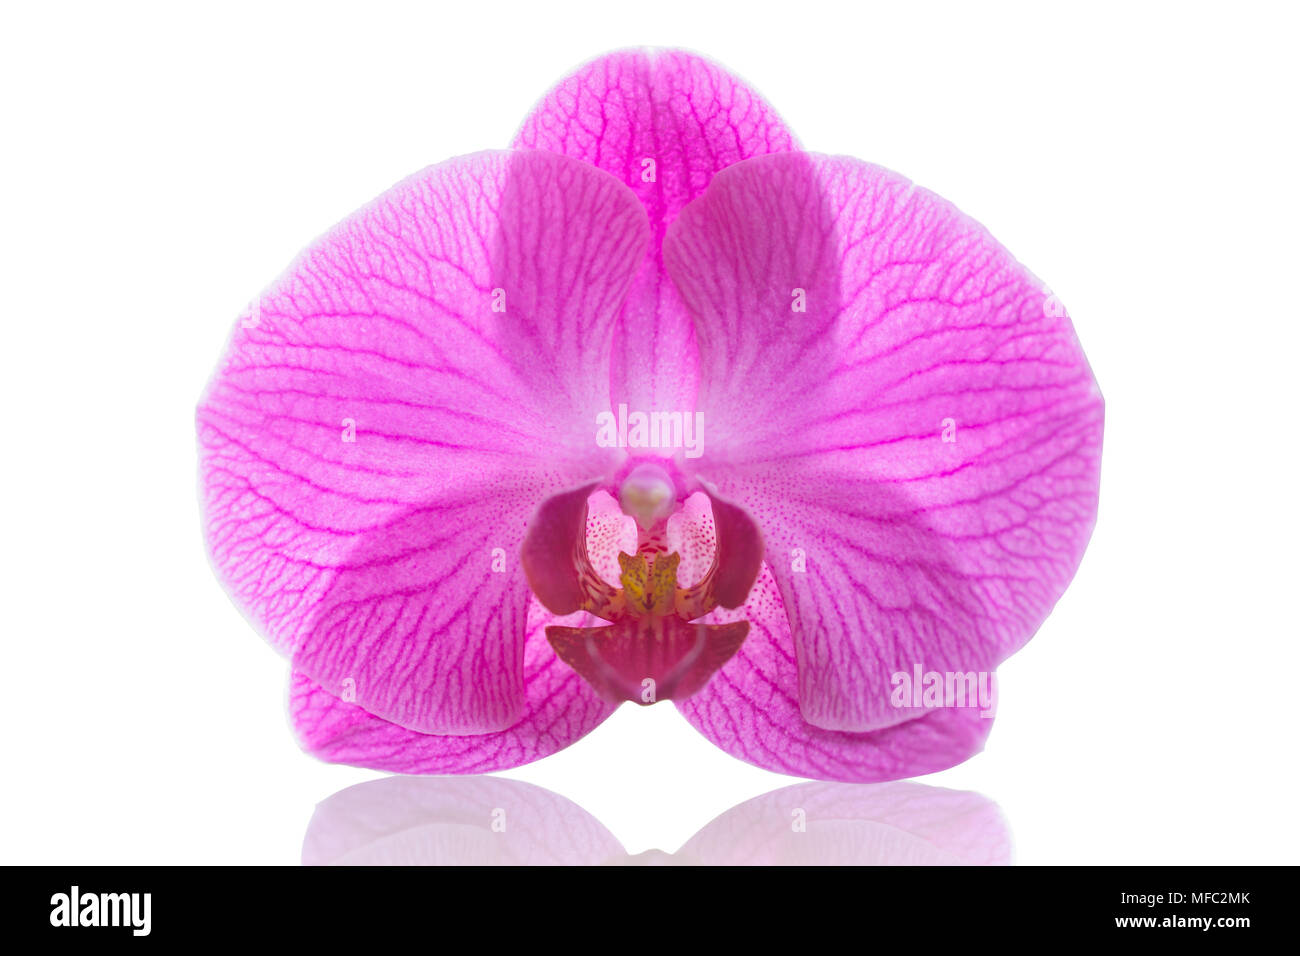 Fleur orchidée Phalaenopsis rose ou espèce dendrobium isolé sur fond blanc avec clipping path Banque D'Images